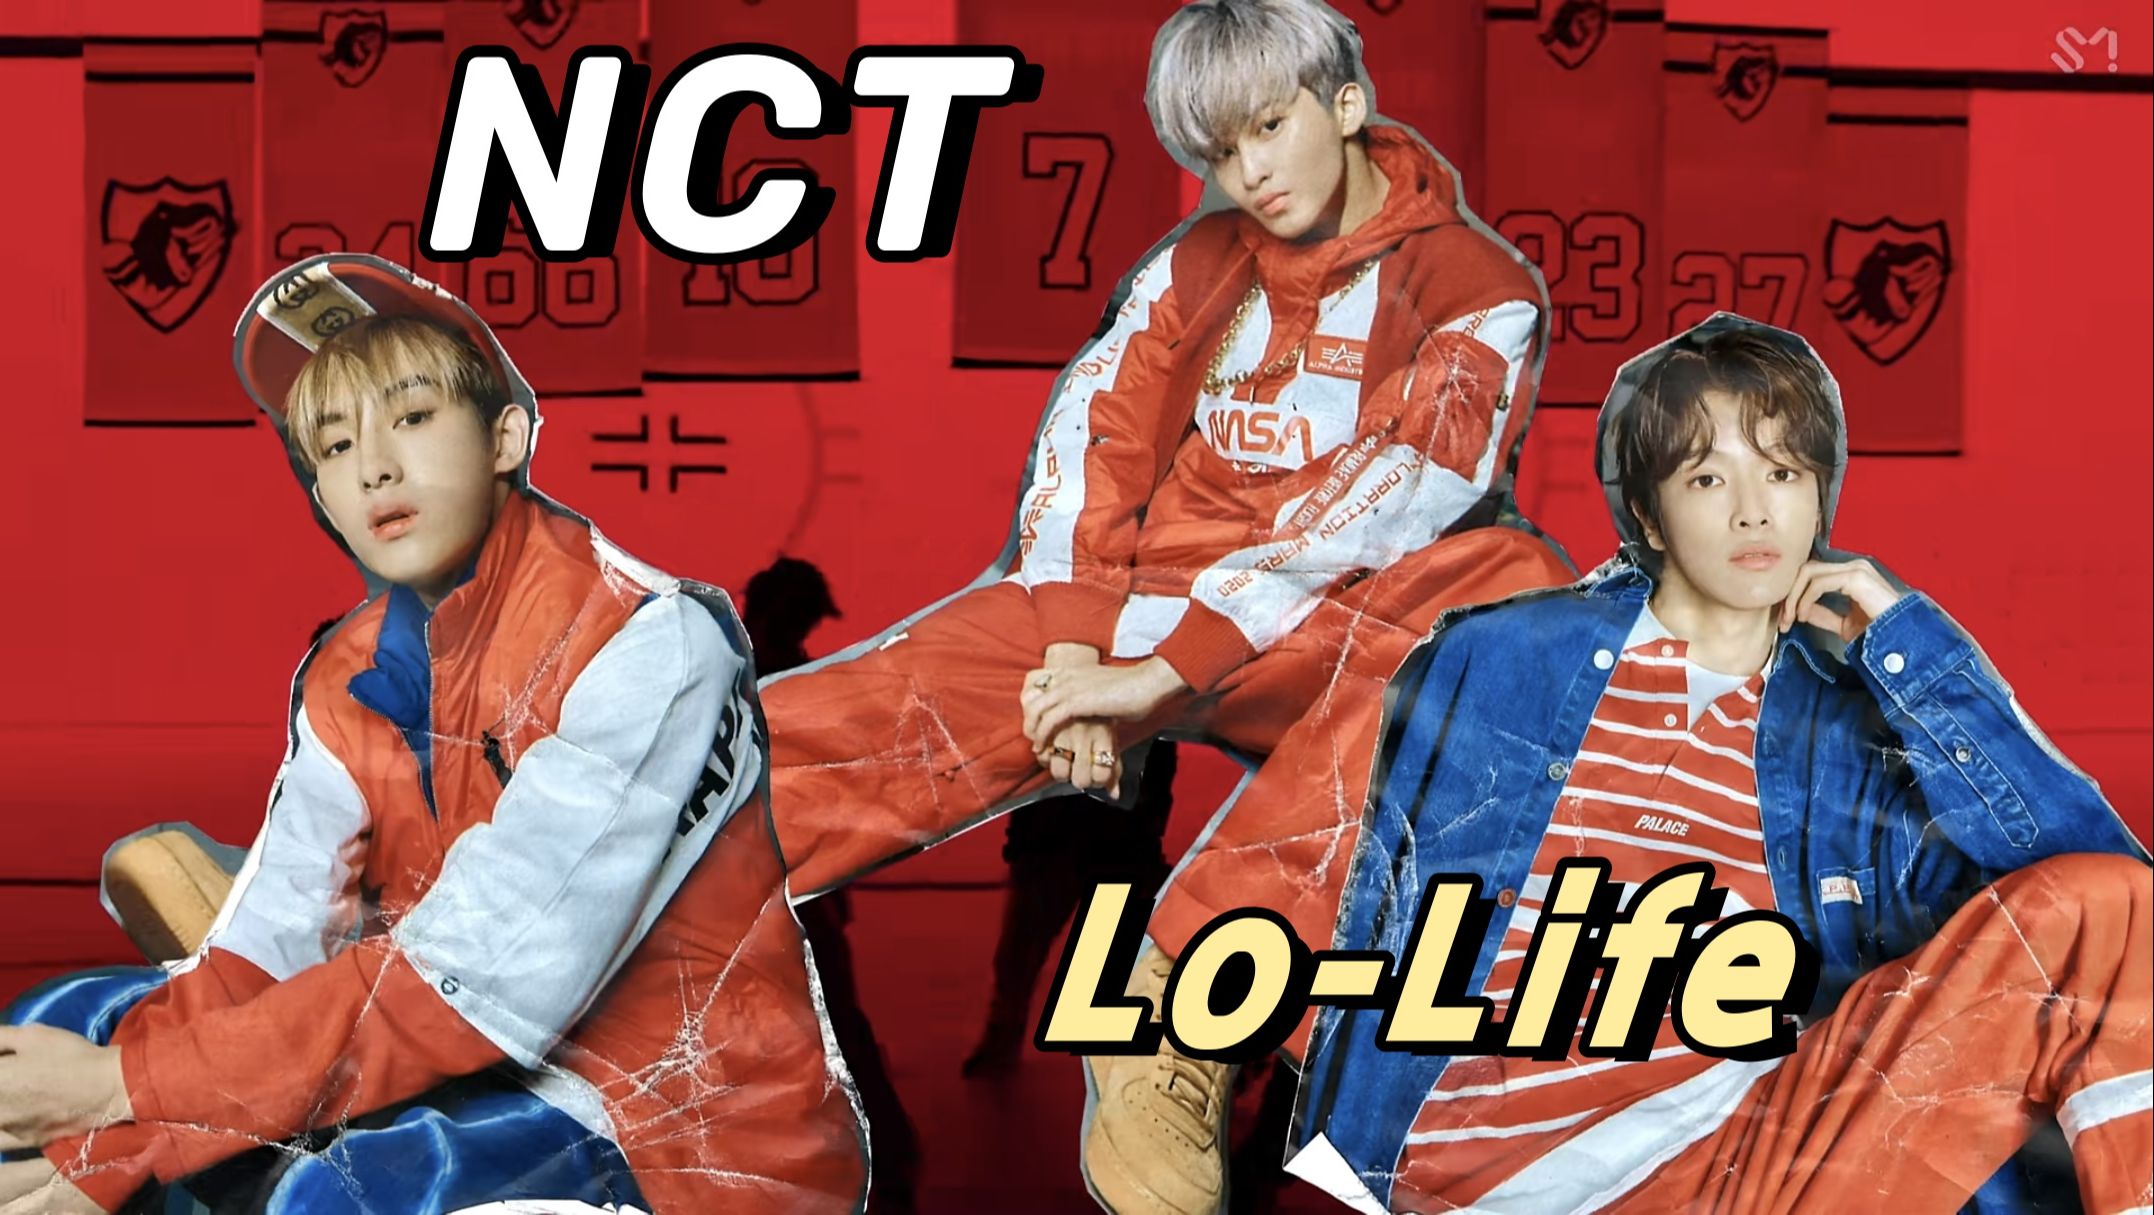 可能是NCT的一些造型的灵感来源：亚文化Lo-Life